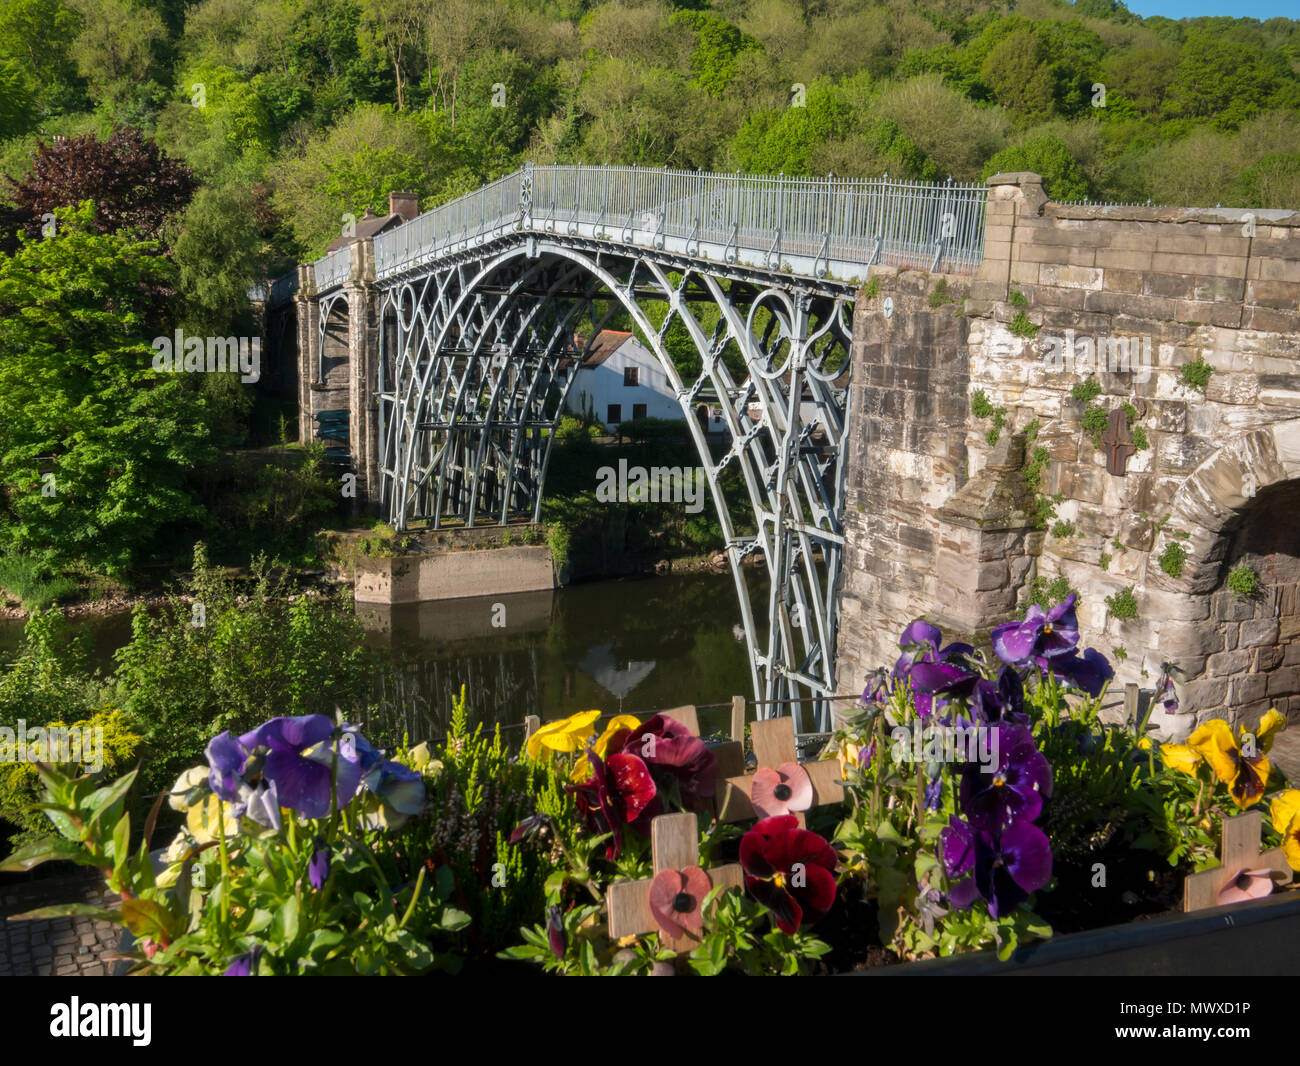 Historische Eiserne Brücke von Abraham Darby III, Ironbridge, Weltkulturerbe der UNESCO, Shropshire, England, Vereinigtes Königreich, Europa Stockfoto